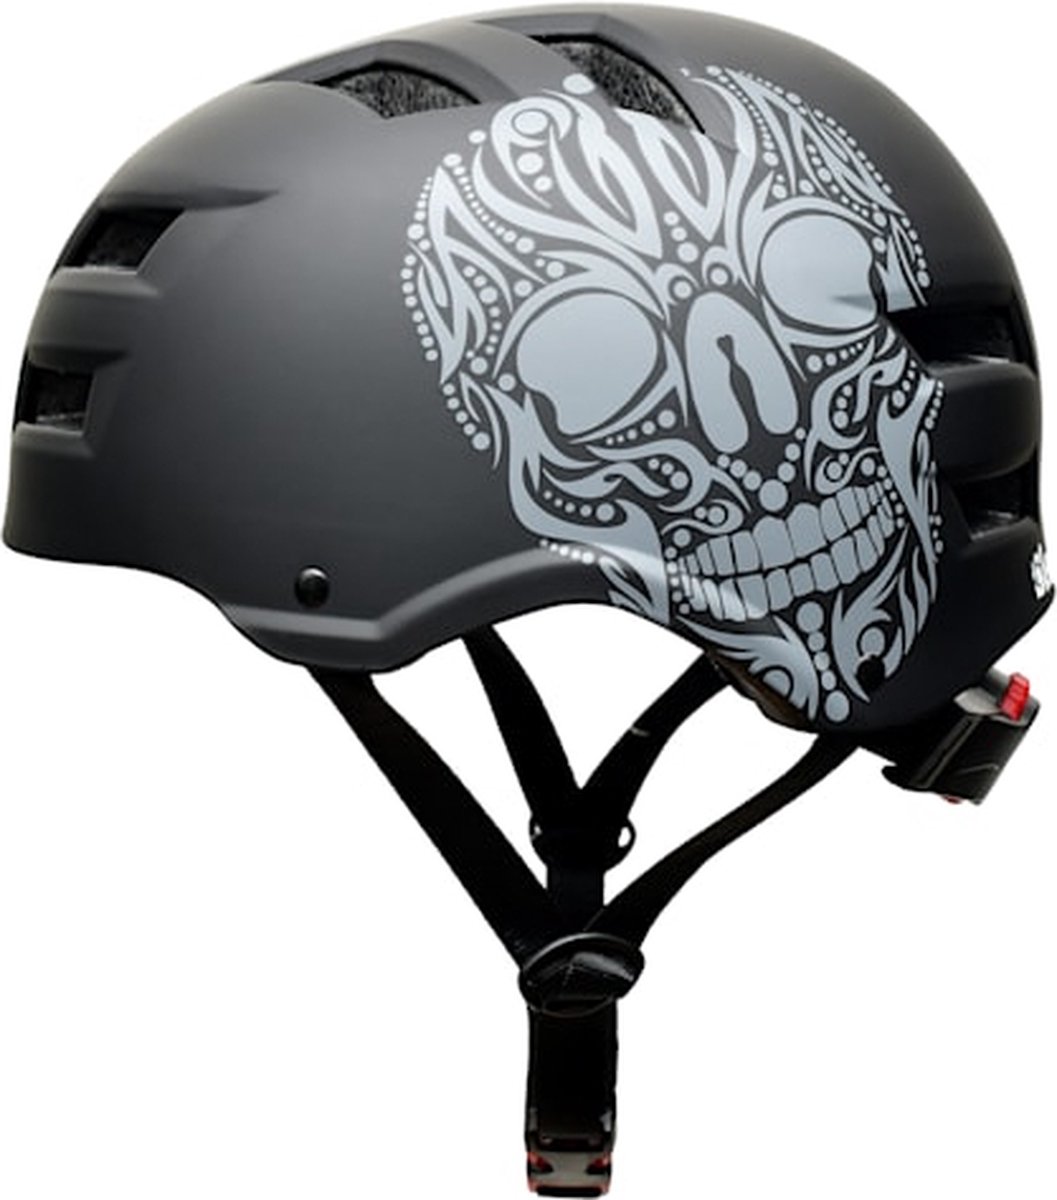 Skullcap by CAPITAL SPORTS Skate- en fietshelm - Sporthelm 55 - 58 cm - Microshell-buitenschaal van polycarbonaat en schokabsorberende EPS-binnenschaal